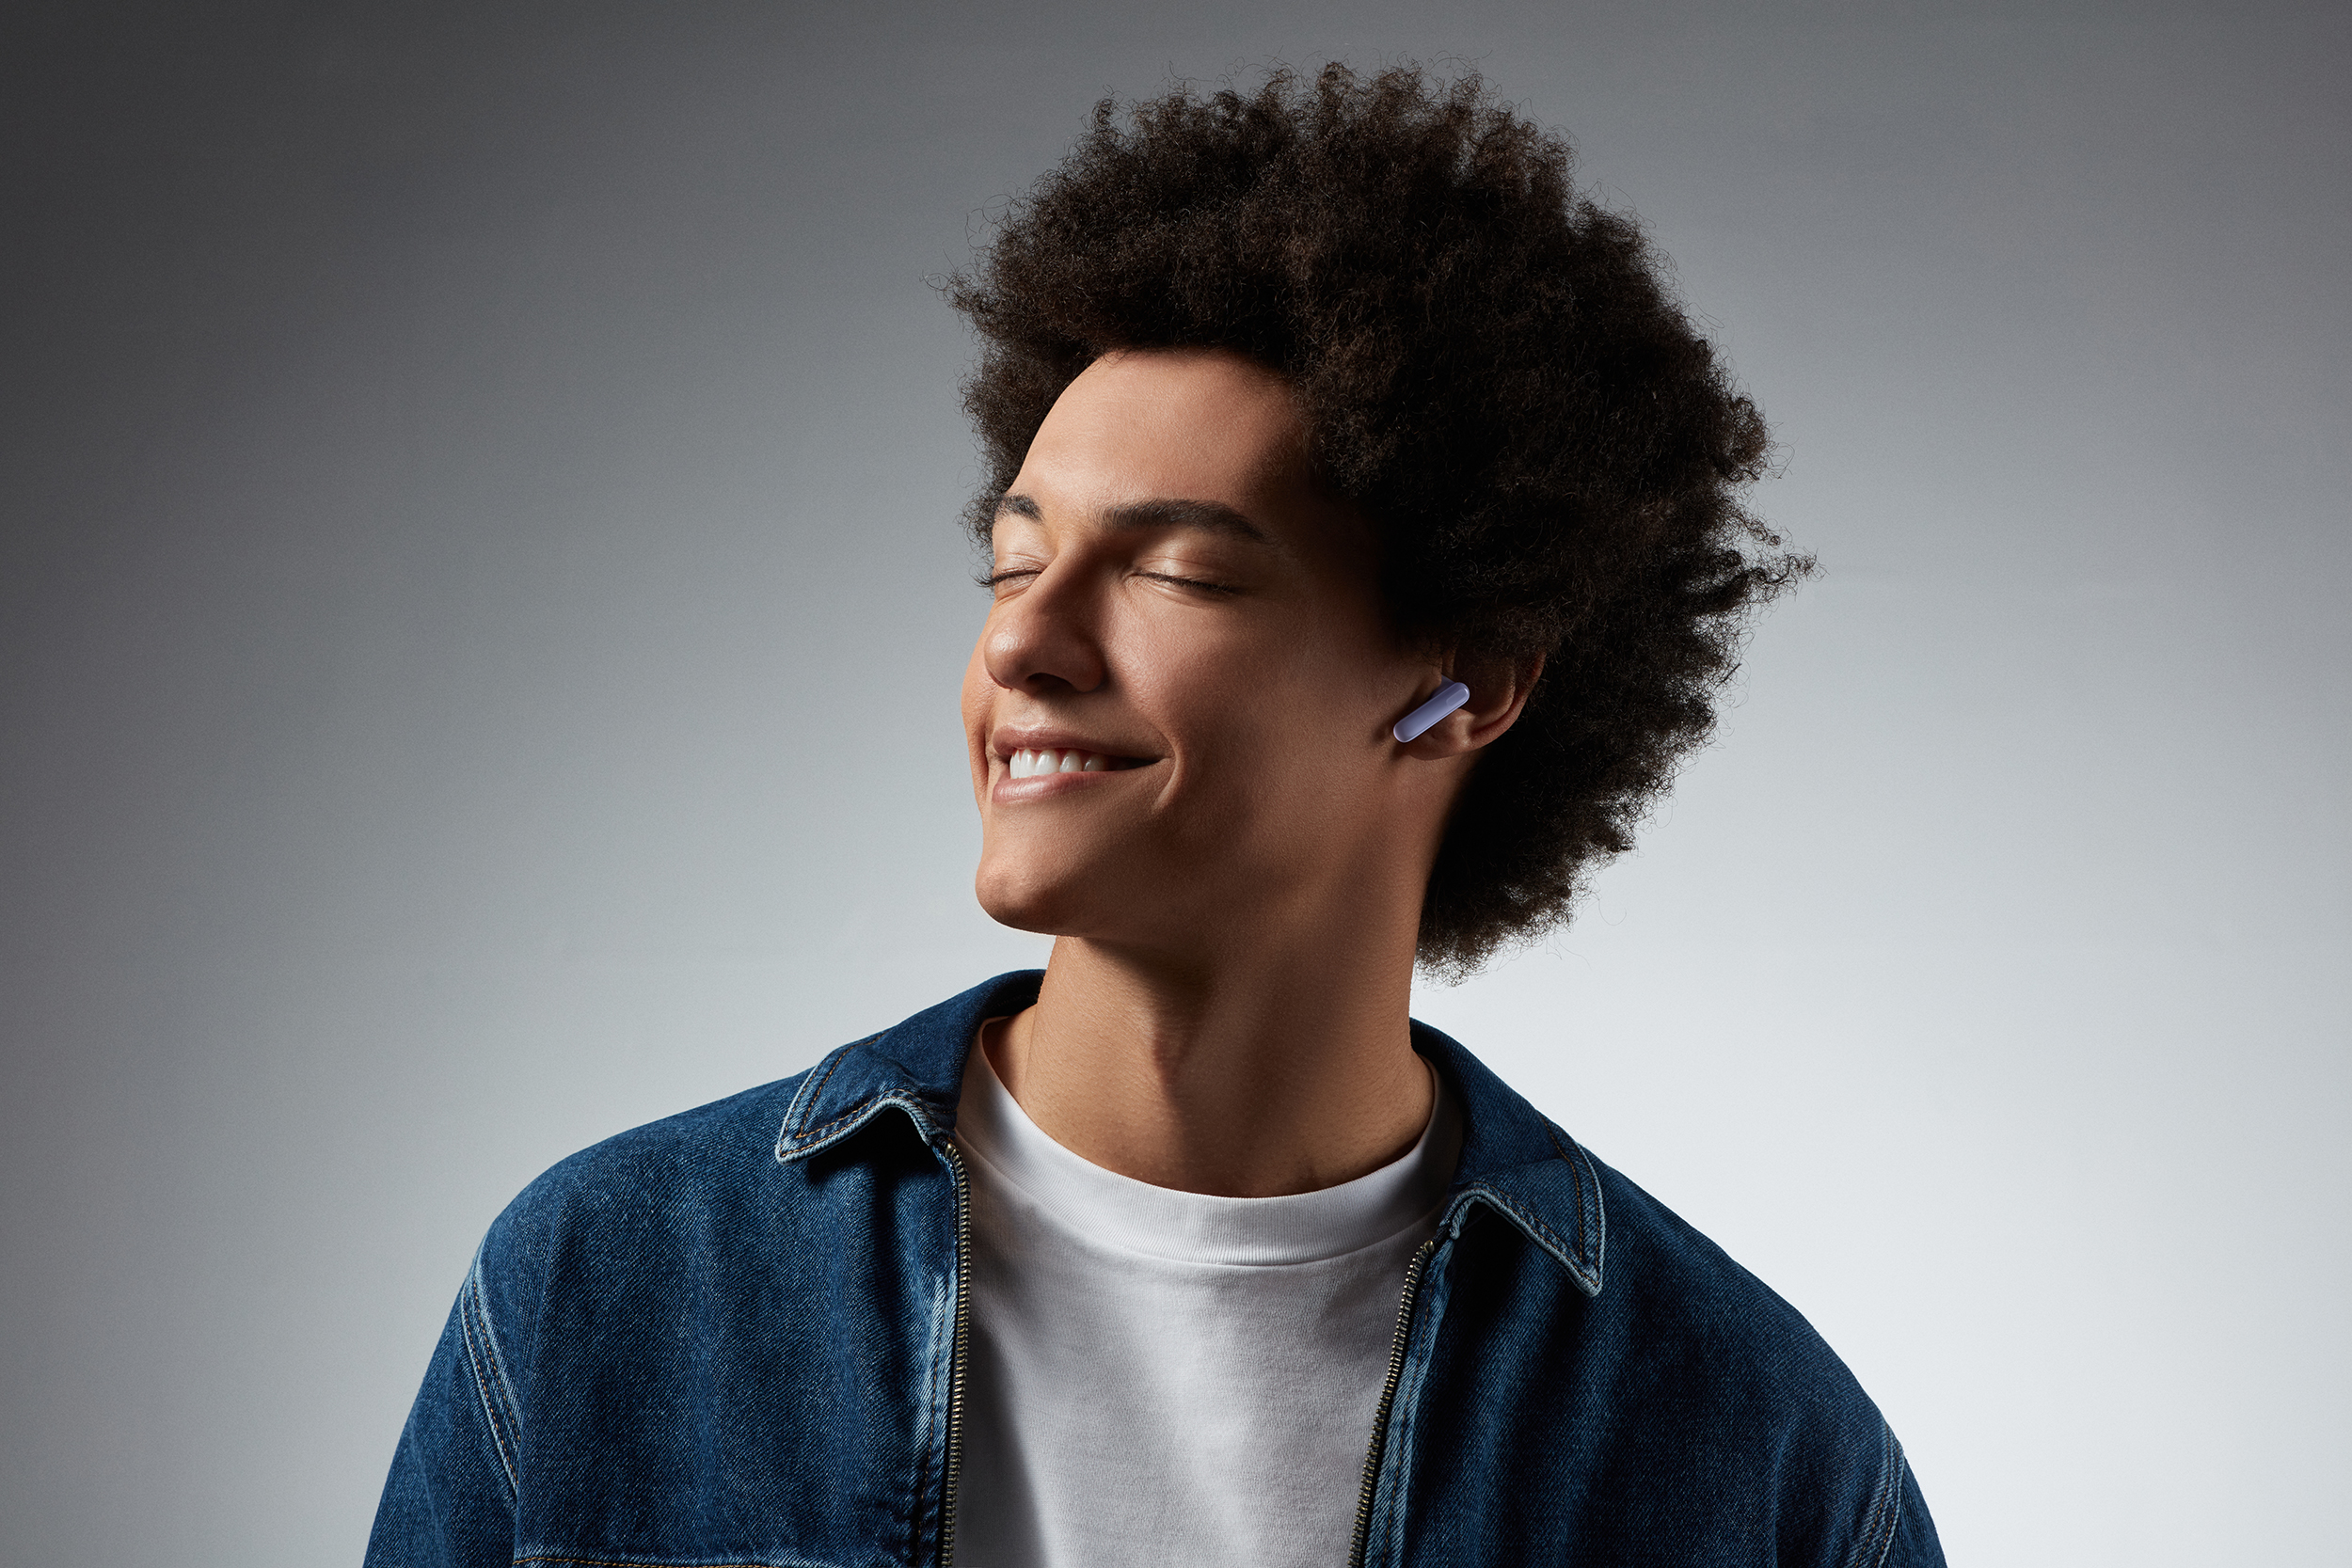 OPPO ra mắt Enco Air3, chiếc tai nghe đầu tiên trong phân khúc được hỗ trợ thuật toán DSP và Bluetooth 5.3